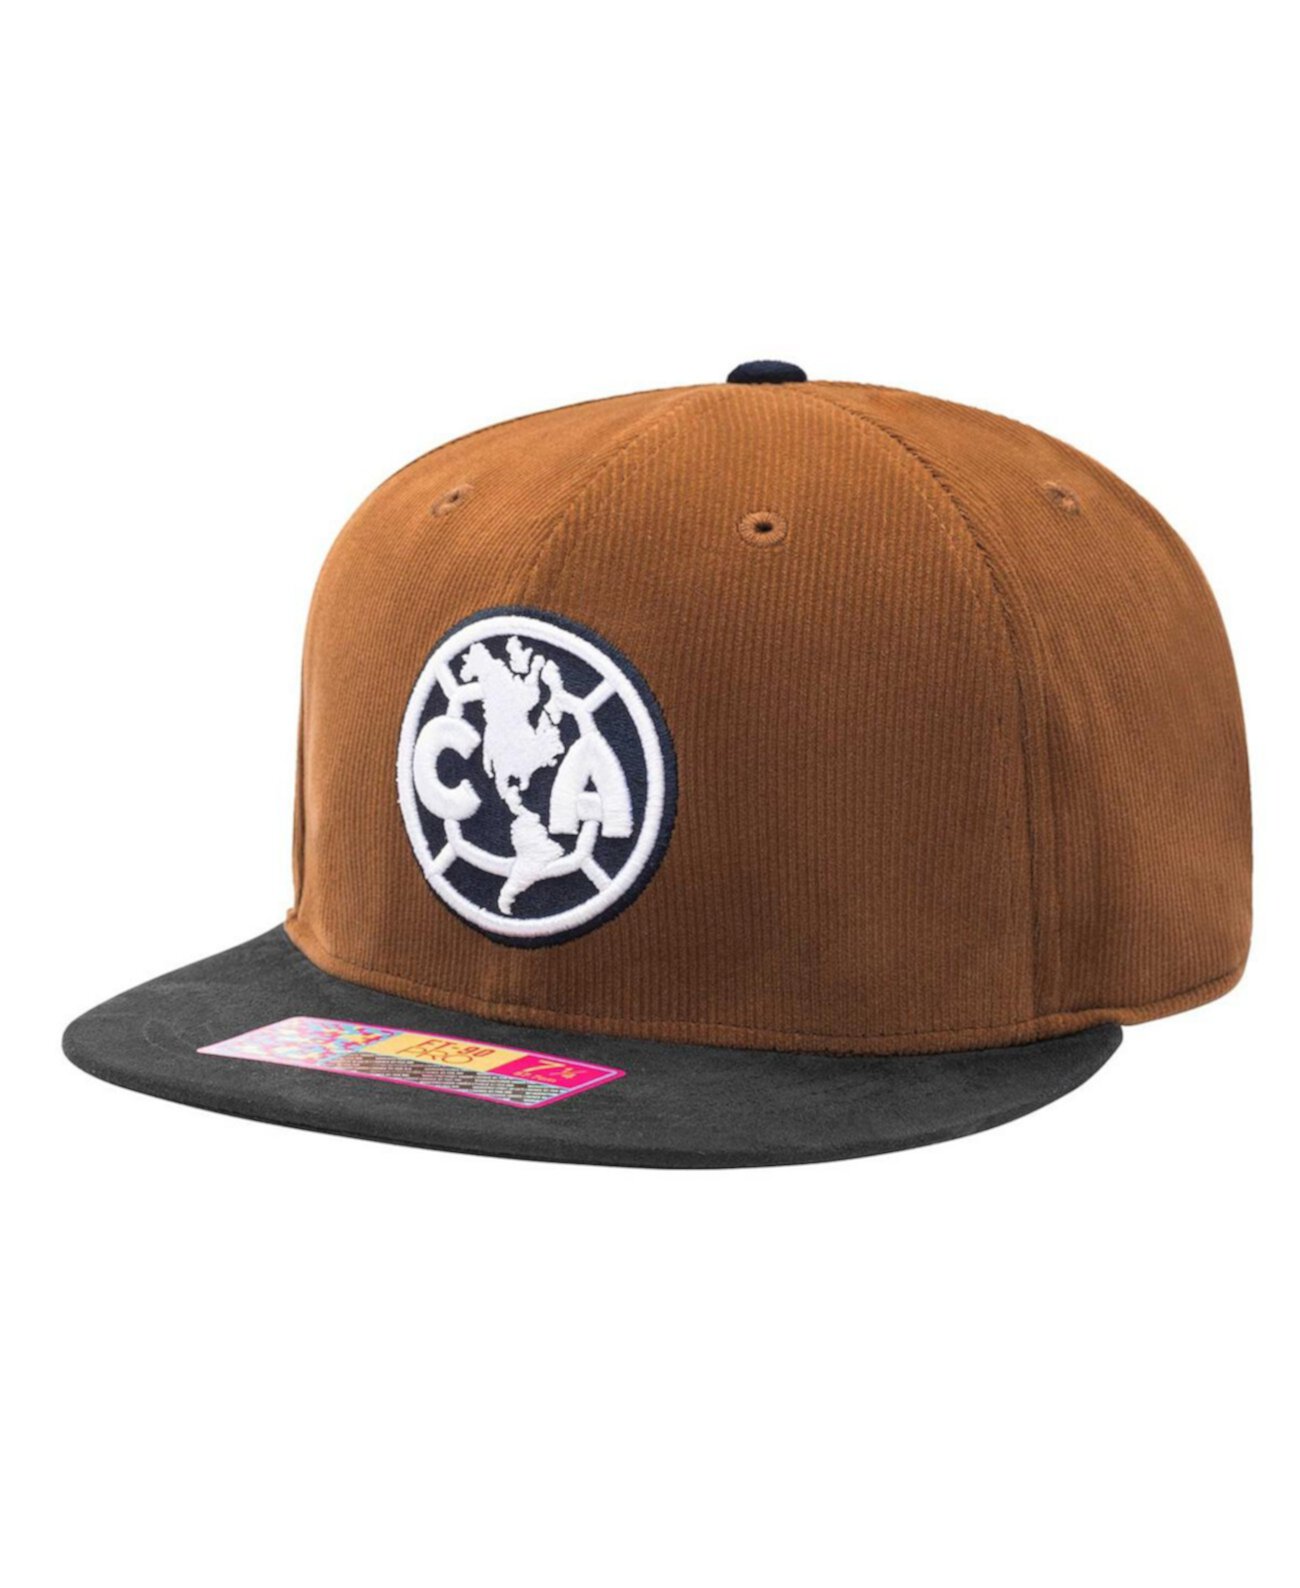 Мужская коричневая приталенная шляпа Club America коньячного цвета Fan Ink